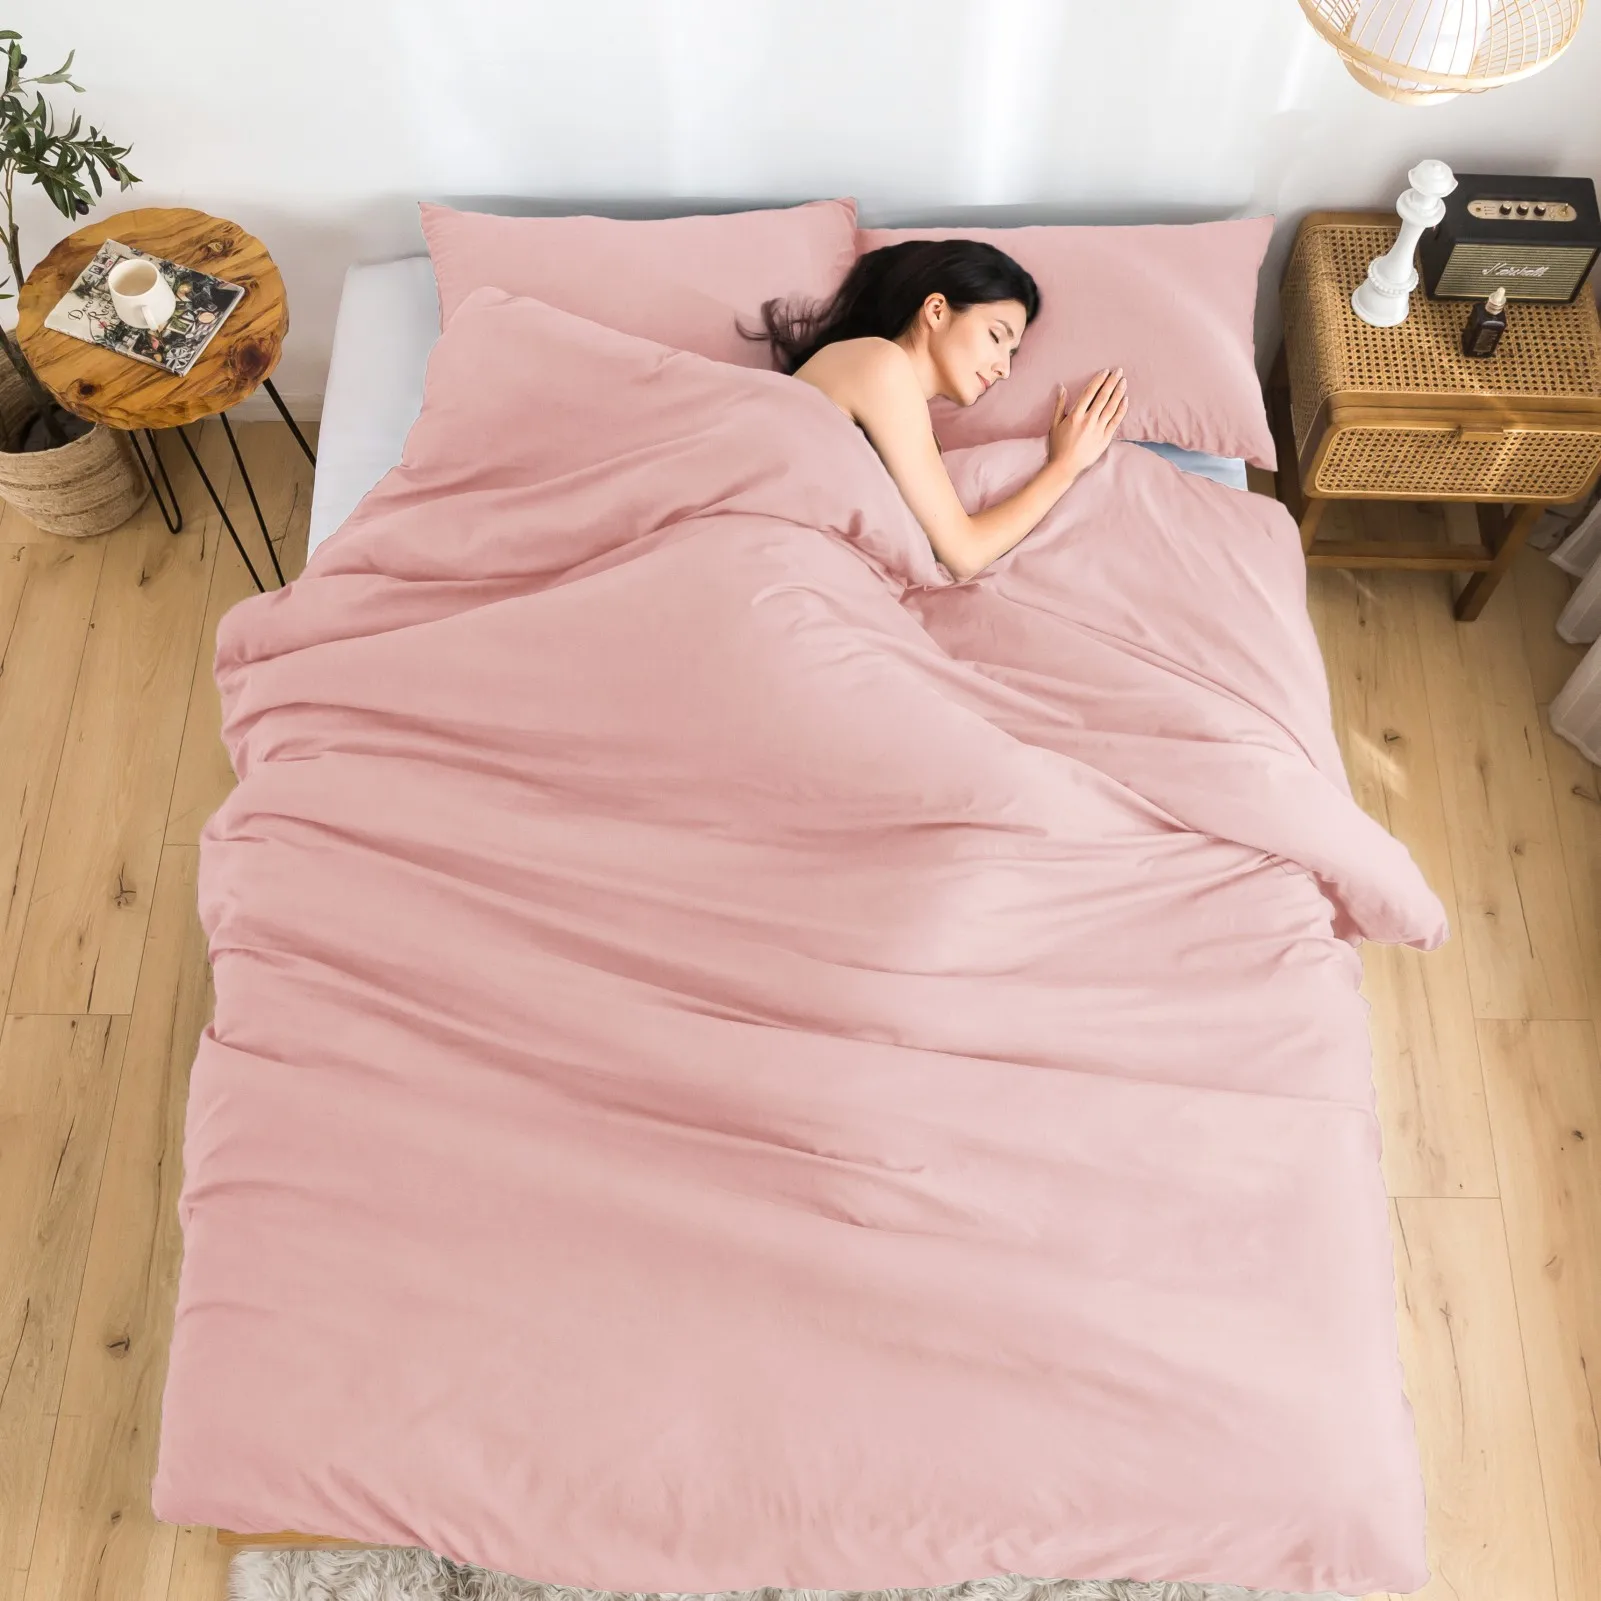 

Ultra-Soft Blush Light Pink Comforter Set for Girls Women -1 Bed Comforter & 2 Pillow Sham Twin XL Size